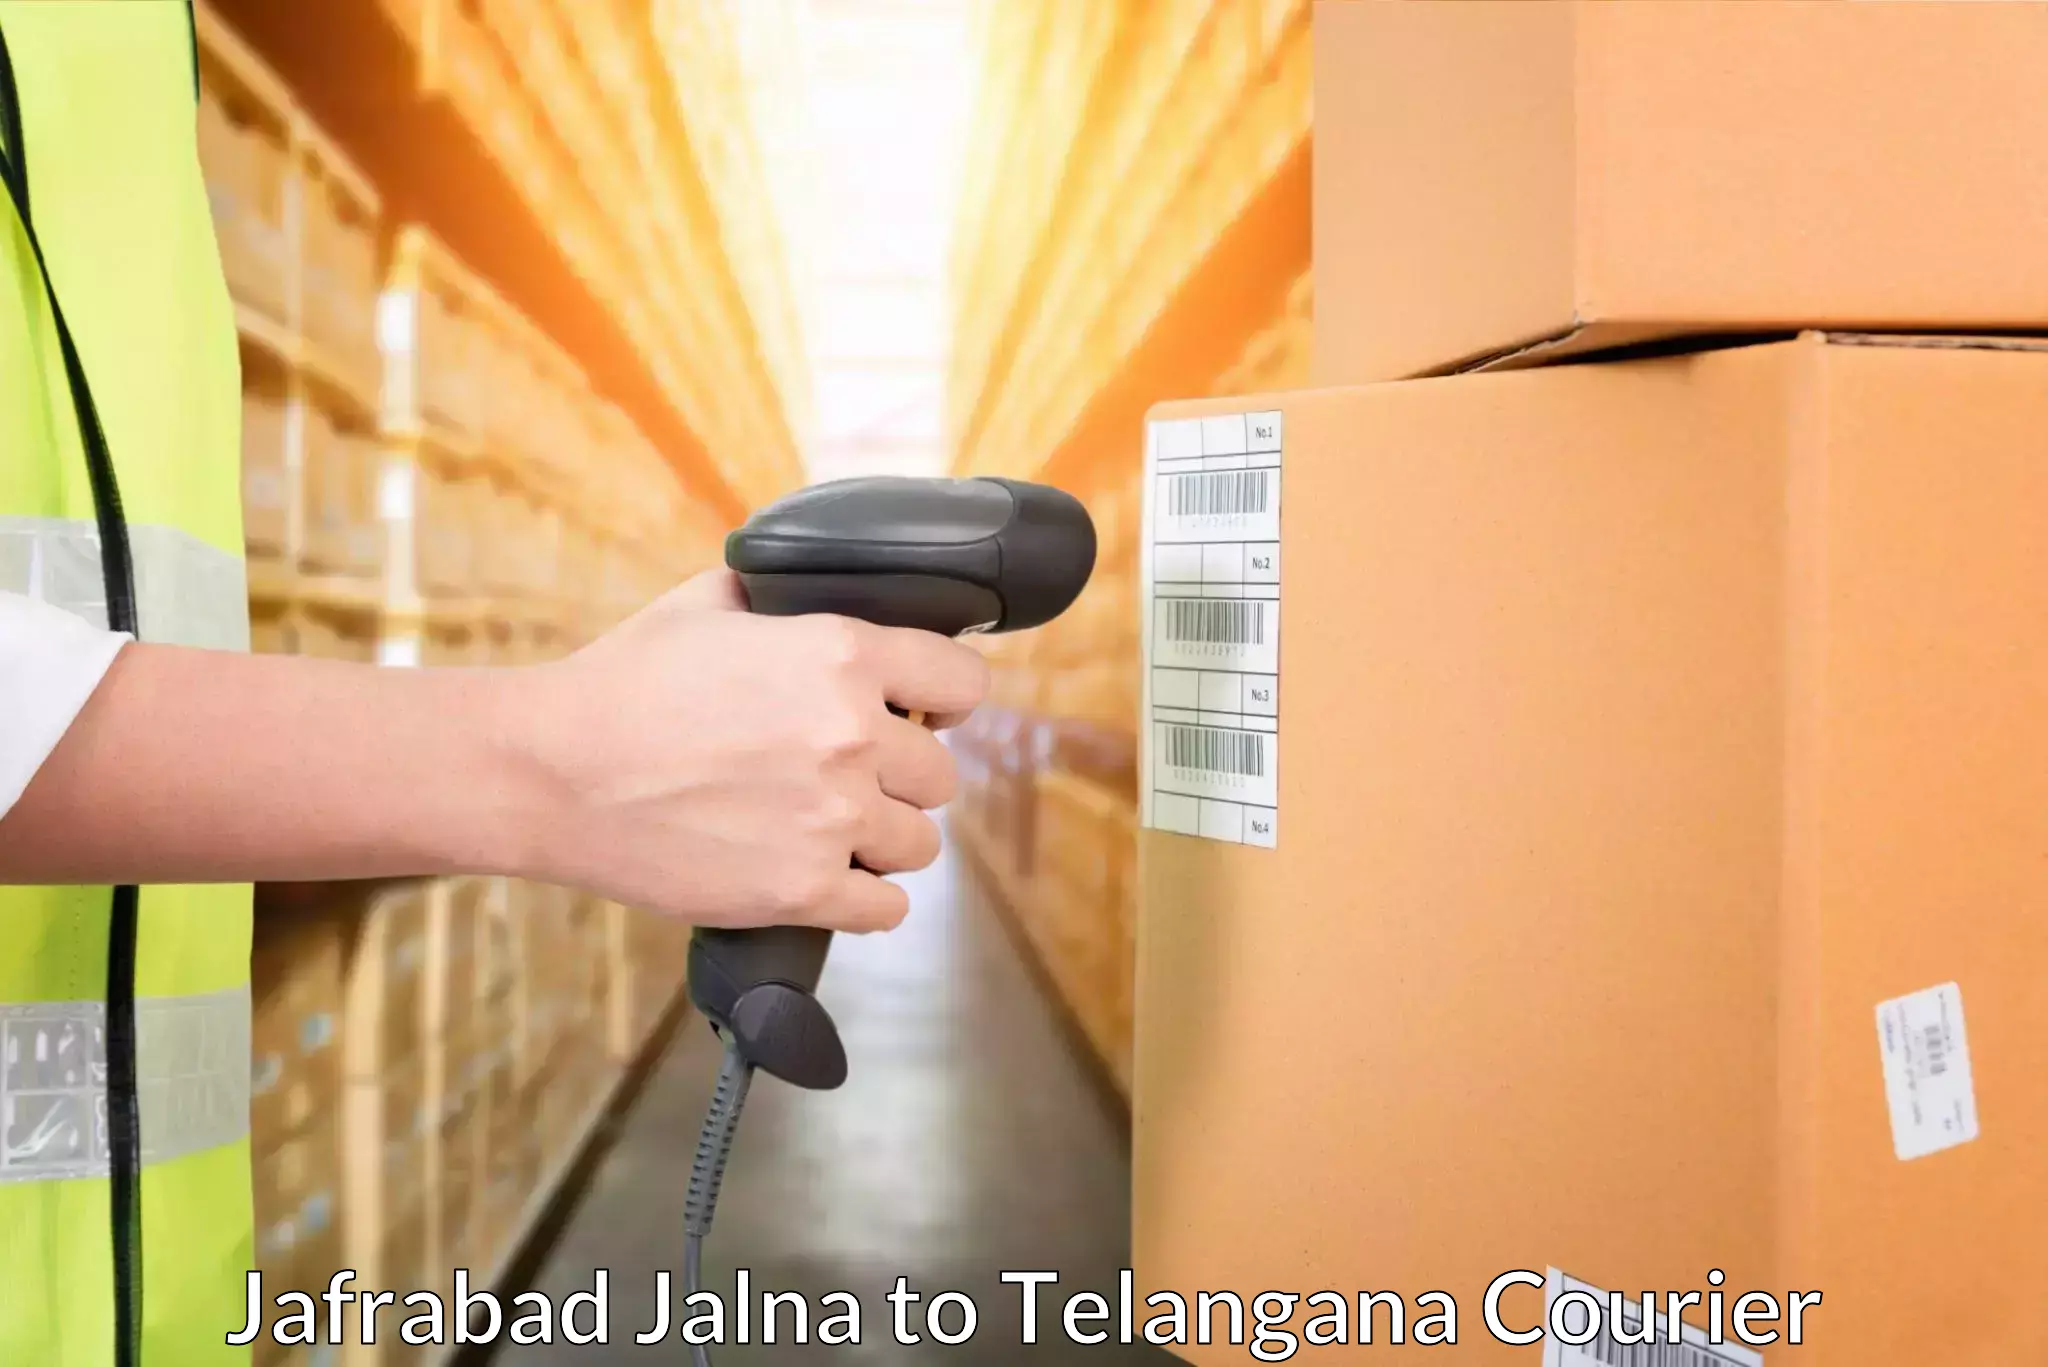 End-to-end delivery Jafrabad Jalna to Odela